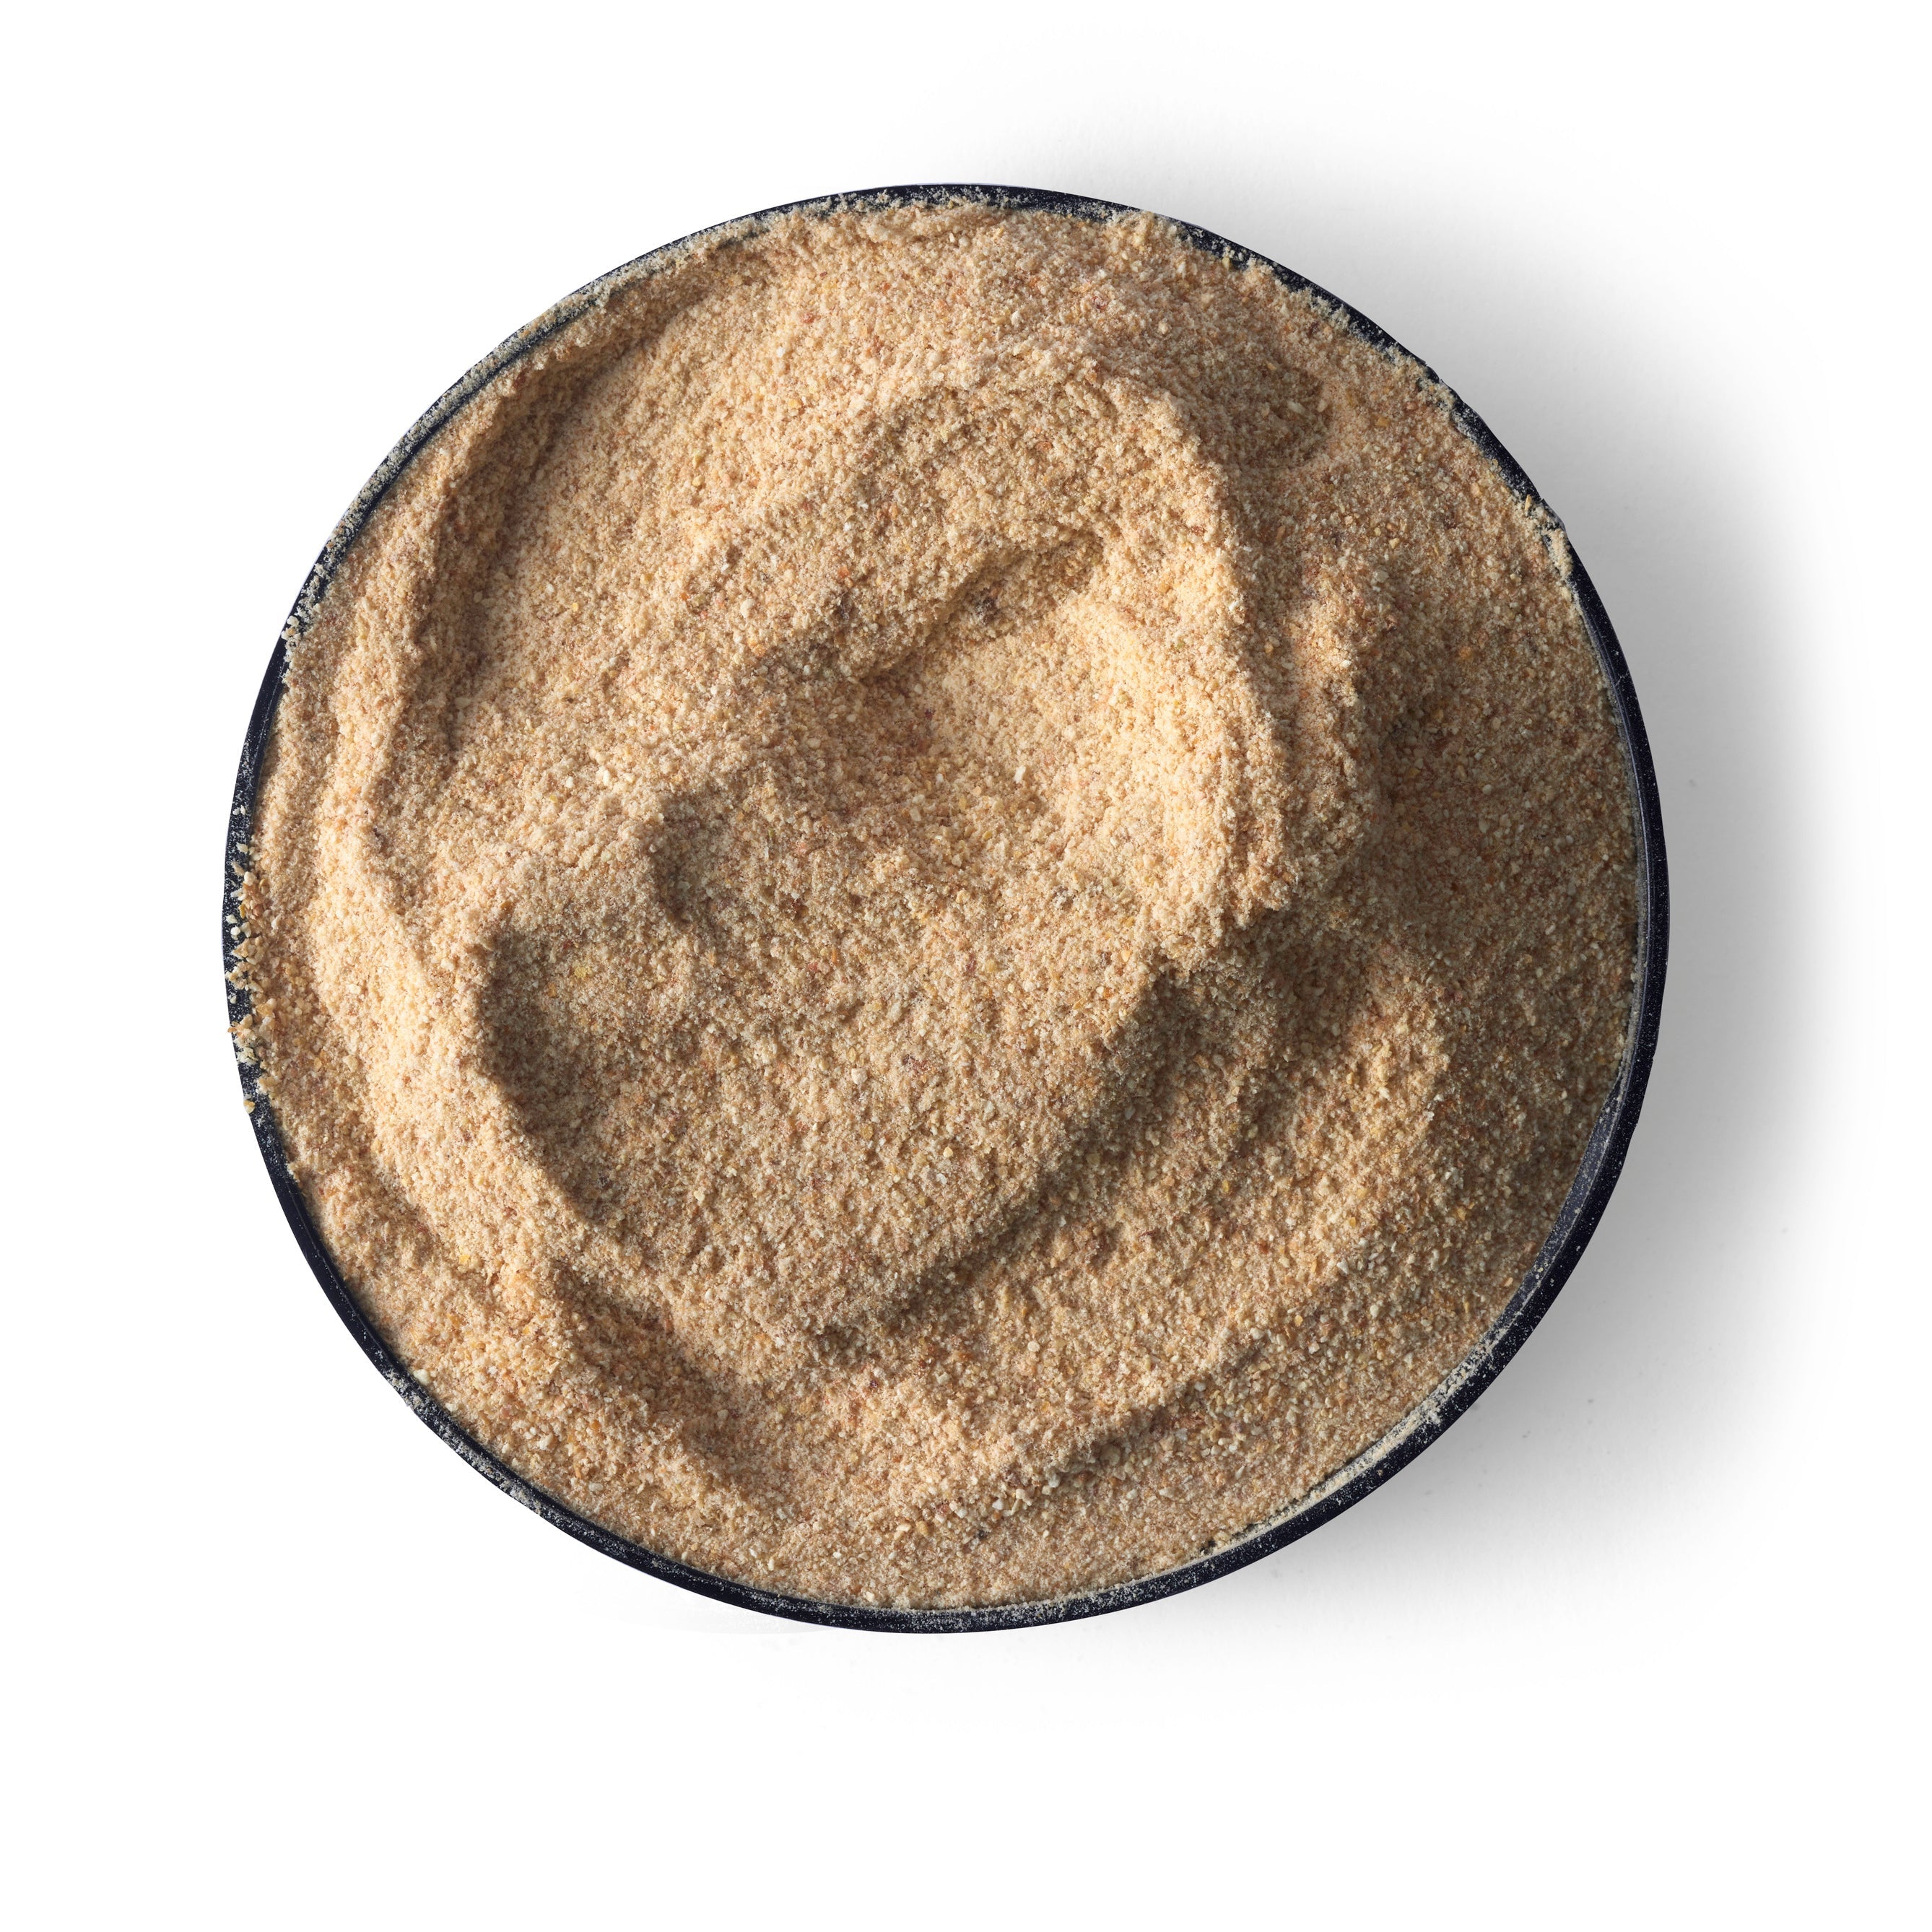 Bulk vacuum sealed - Nutritional Freeze-dried Marula fruit powder